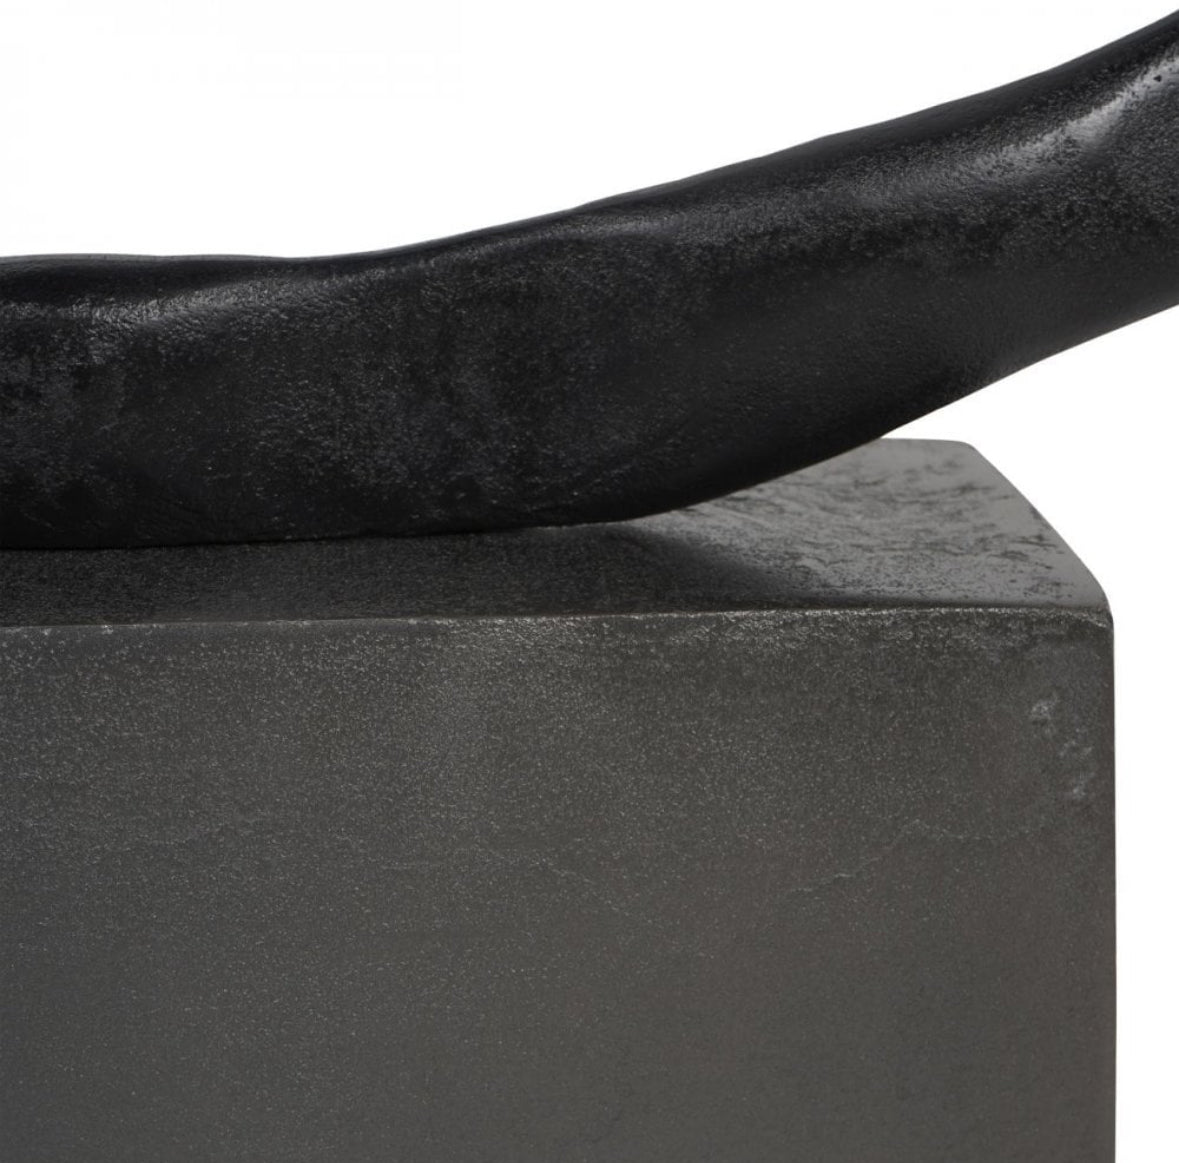 Isla Large Textured Black Aluminium Abstract Sculpture